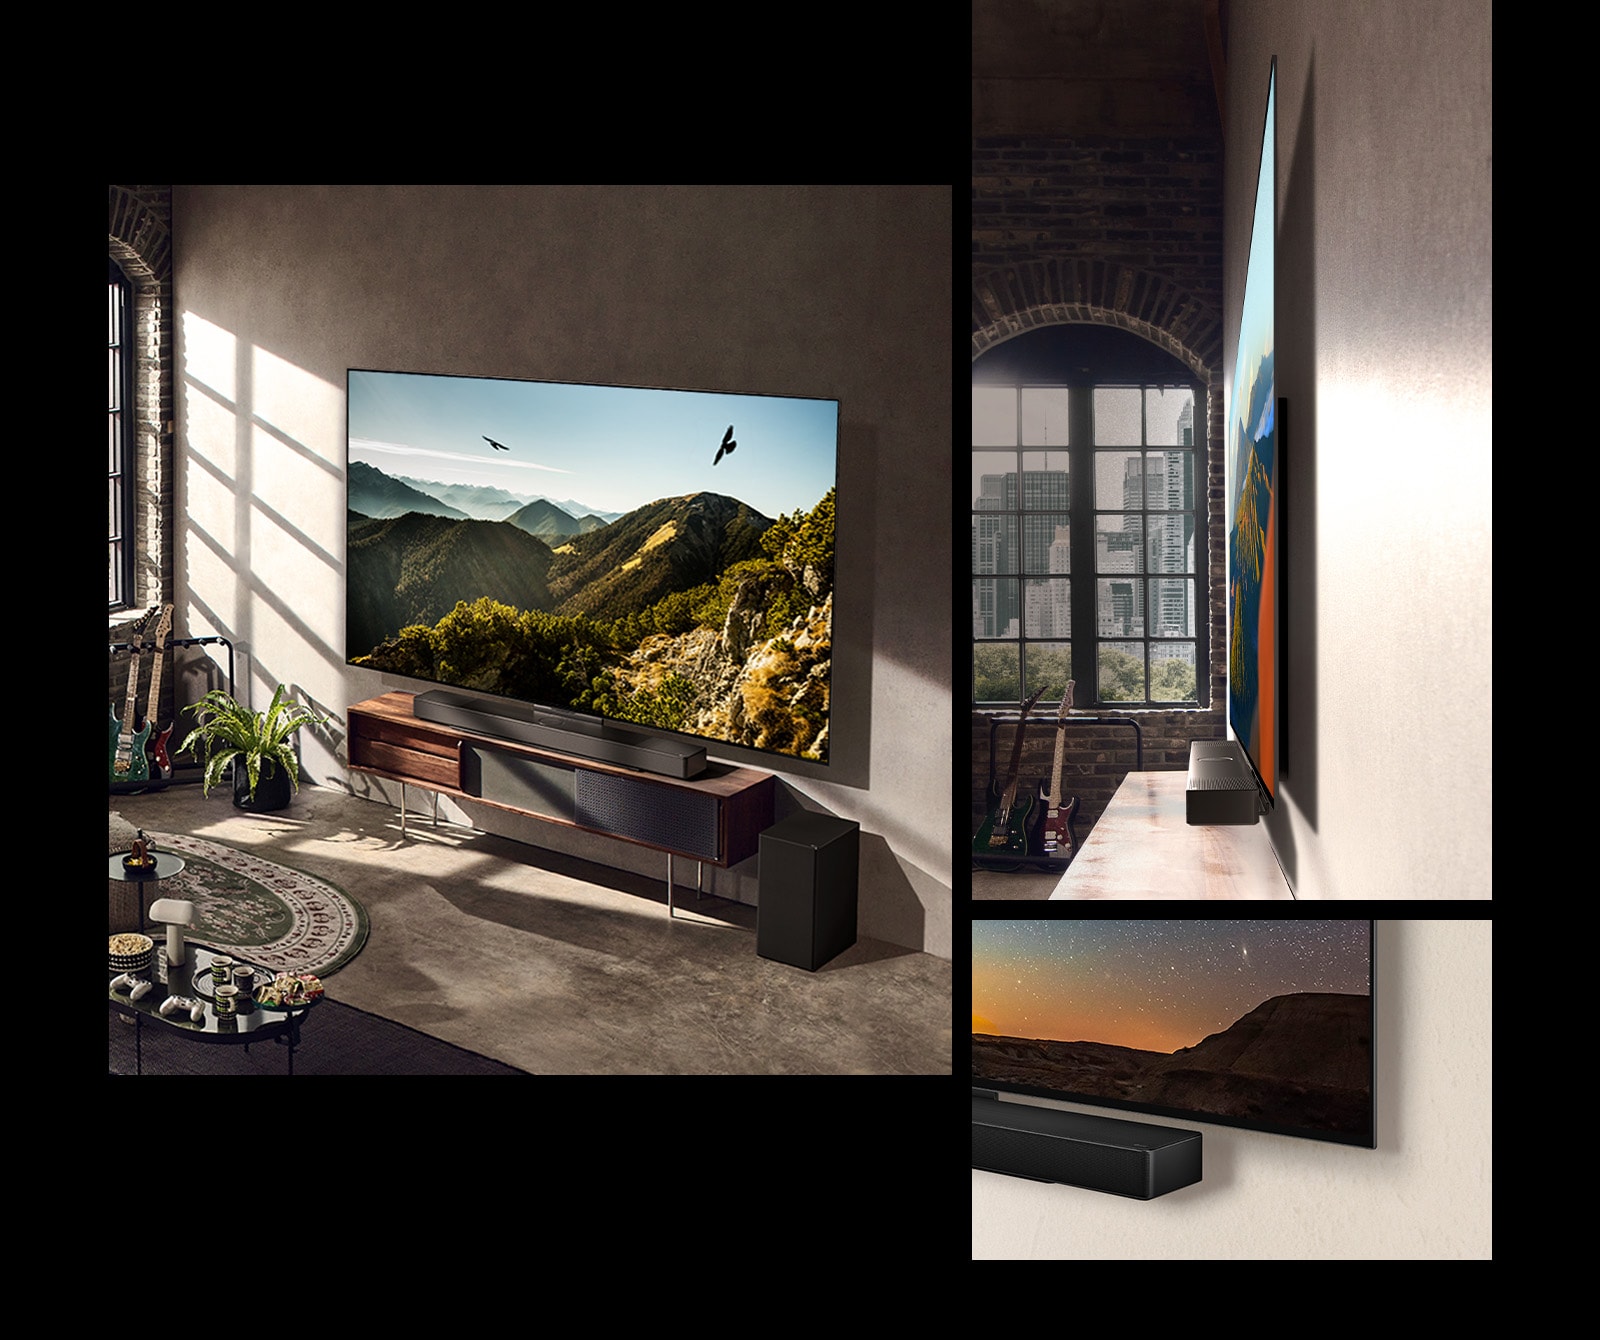 Slika televizorja LG OLED C3 z zvočnikom Soundbar na steni v umetniški sobi.  Stranski pogled na tanke dimenzije televizorja LG OLED C3 pred oknom s pogledom na mesto.  Spodnji kot televizorja LG OLED C3 in zvočnika Soundbar.